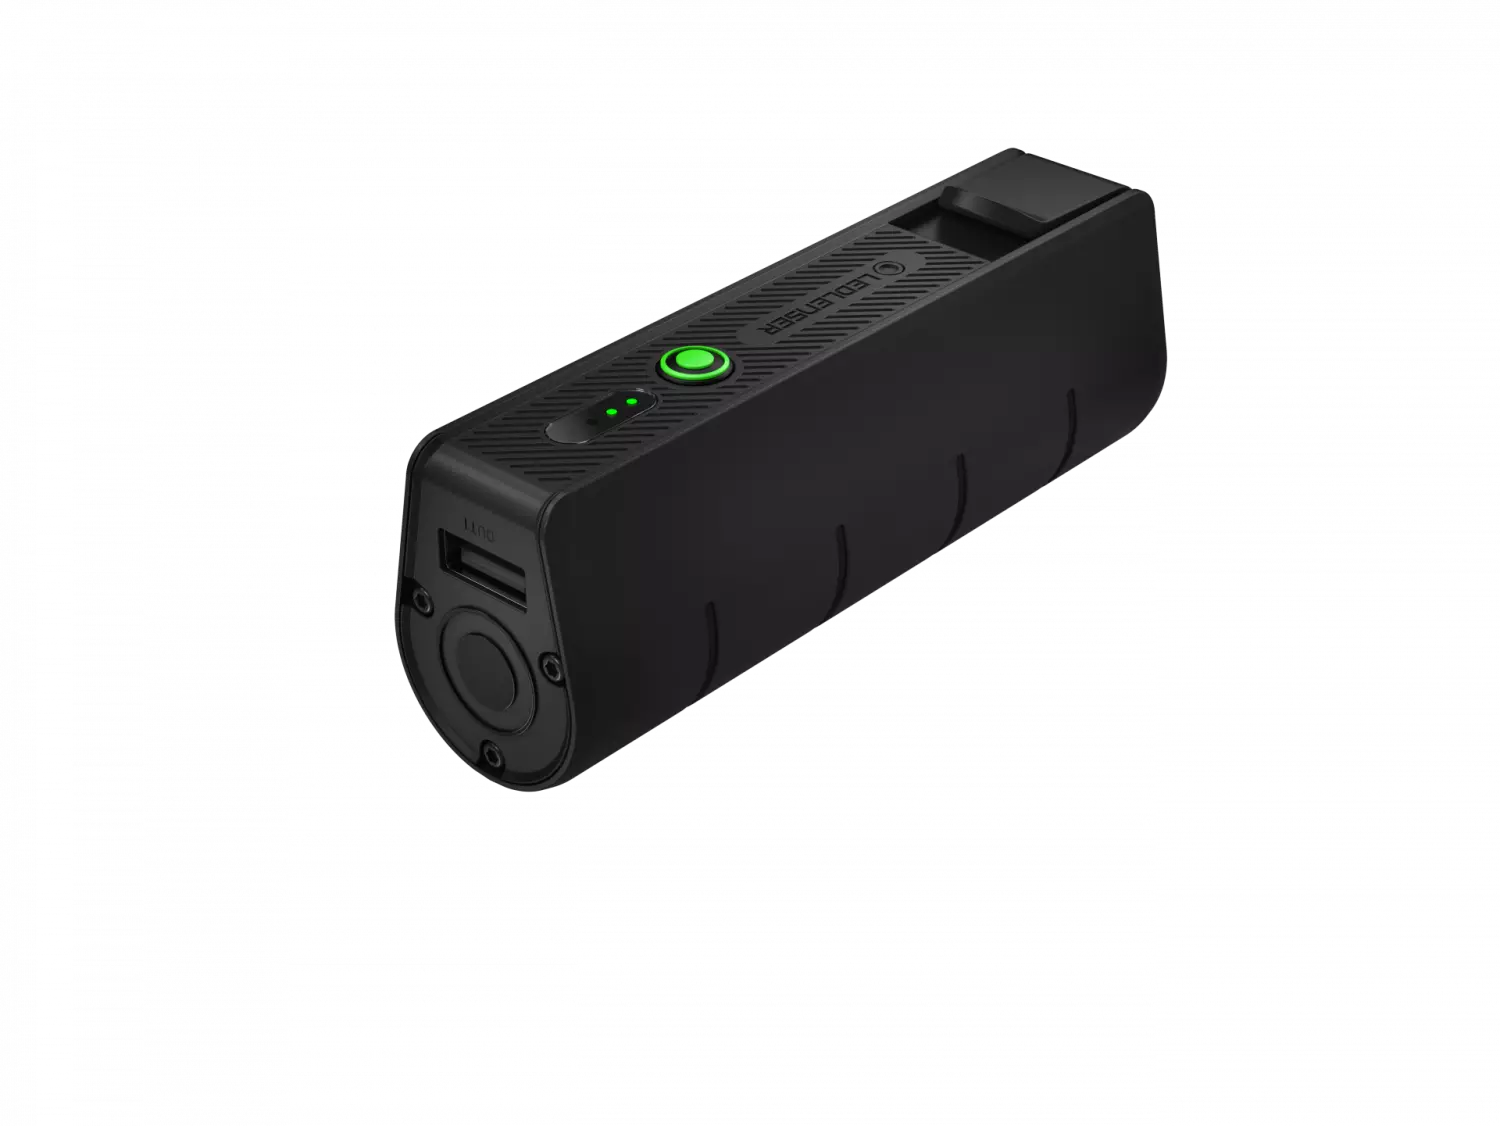 Ledlenser Flex5 Chargeur de batterie